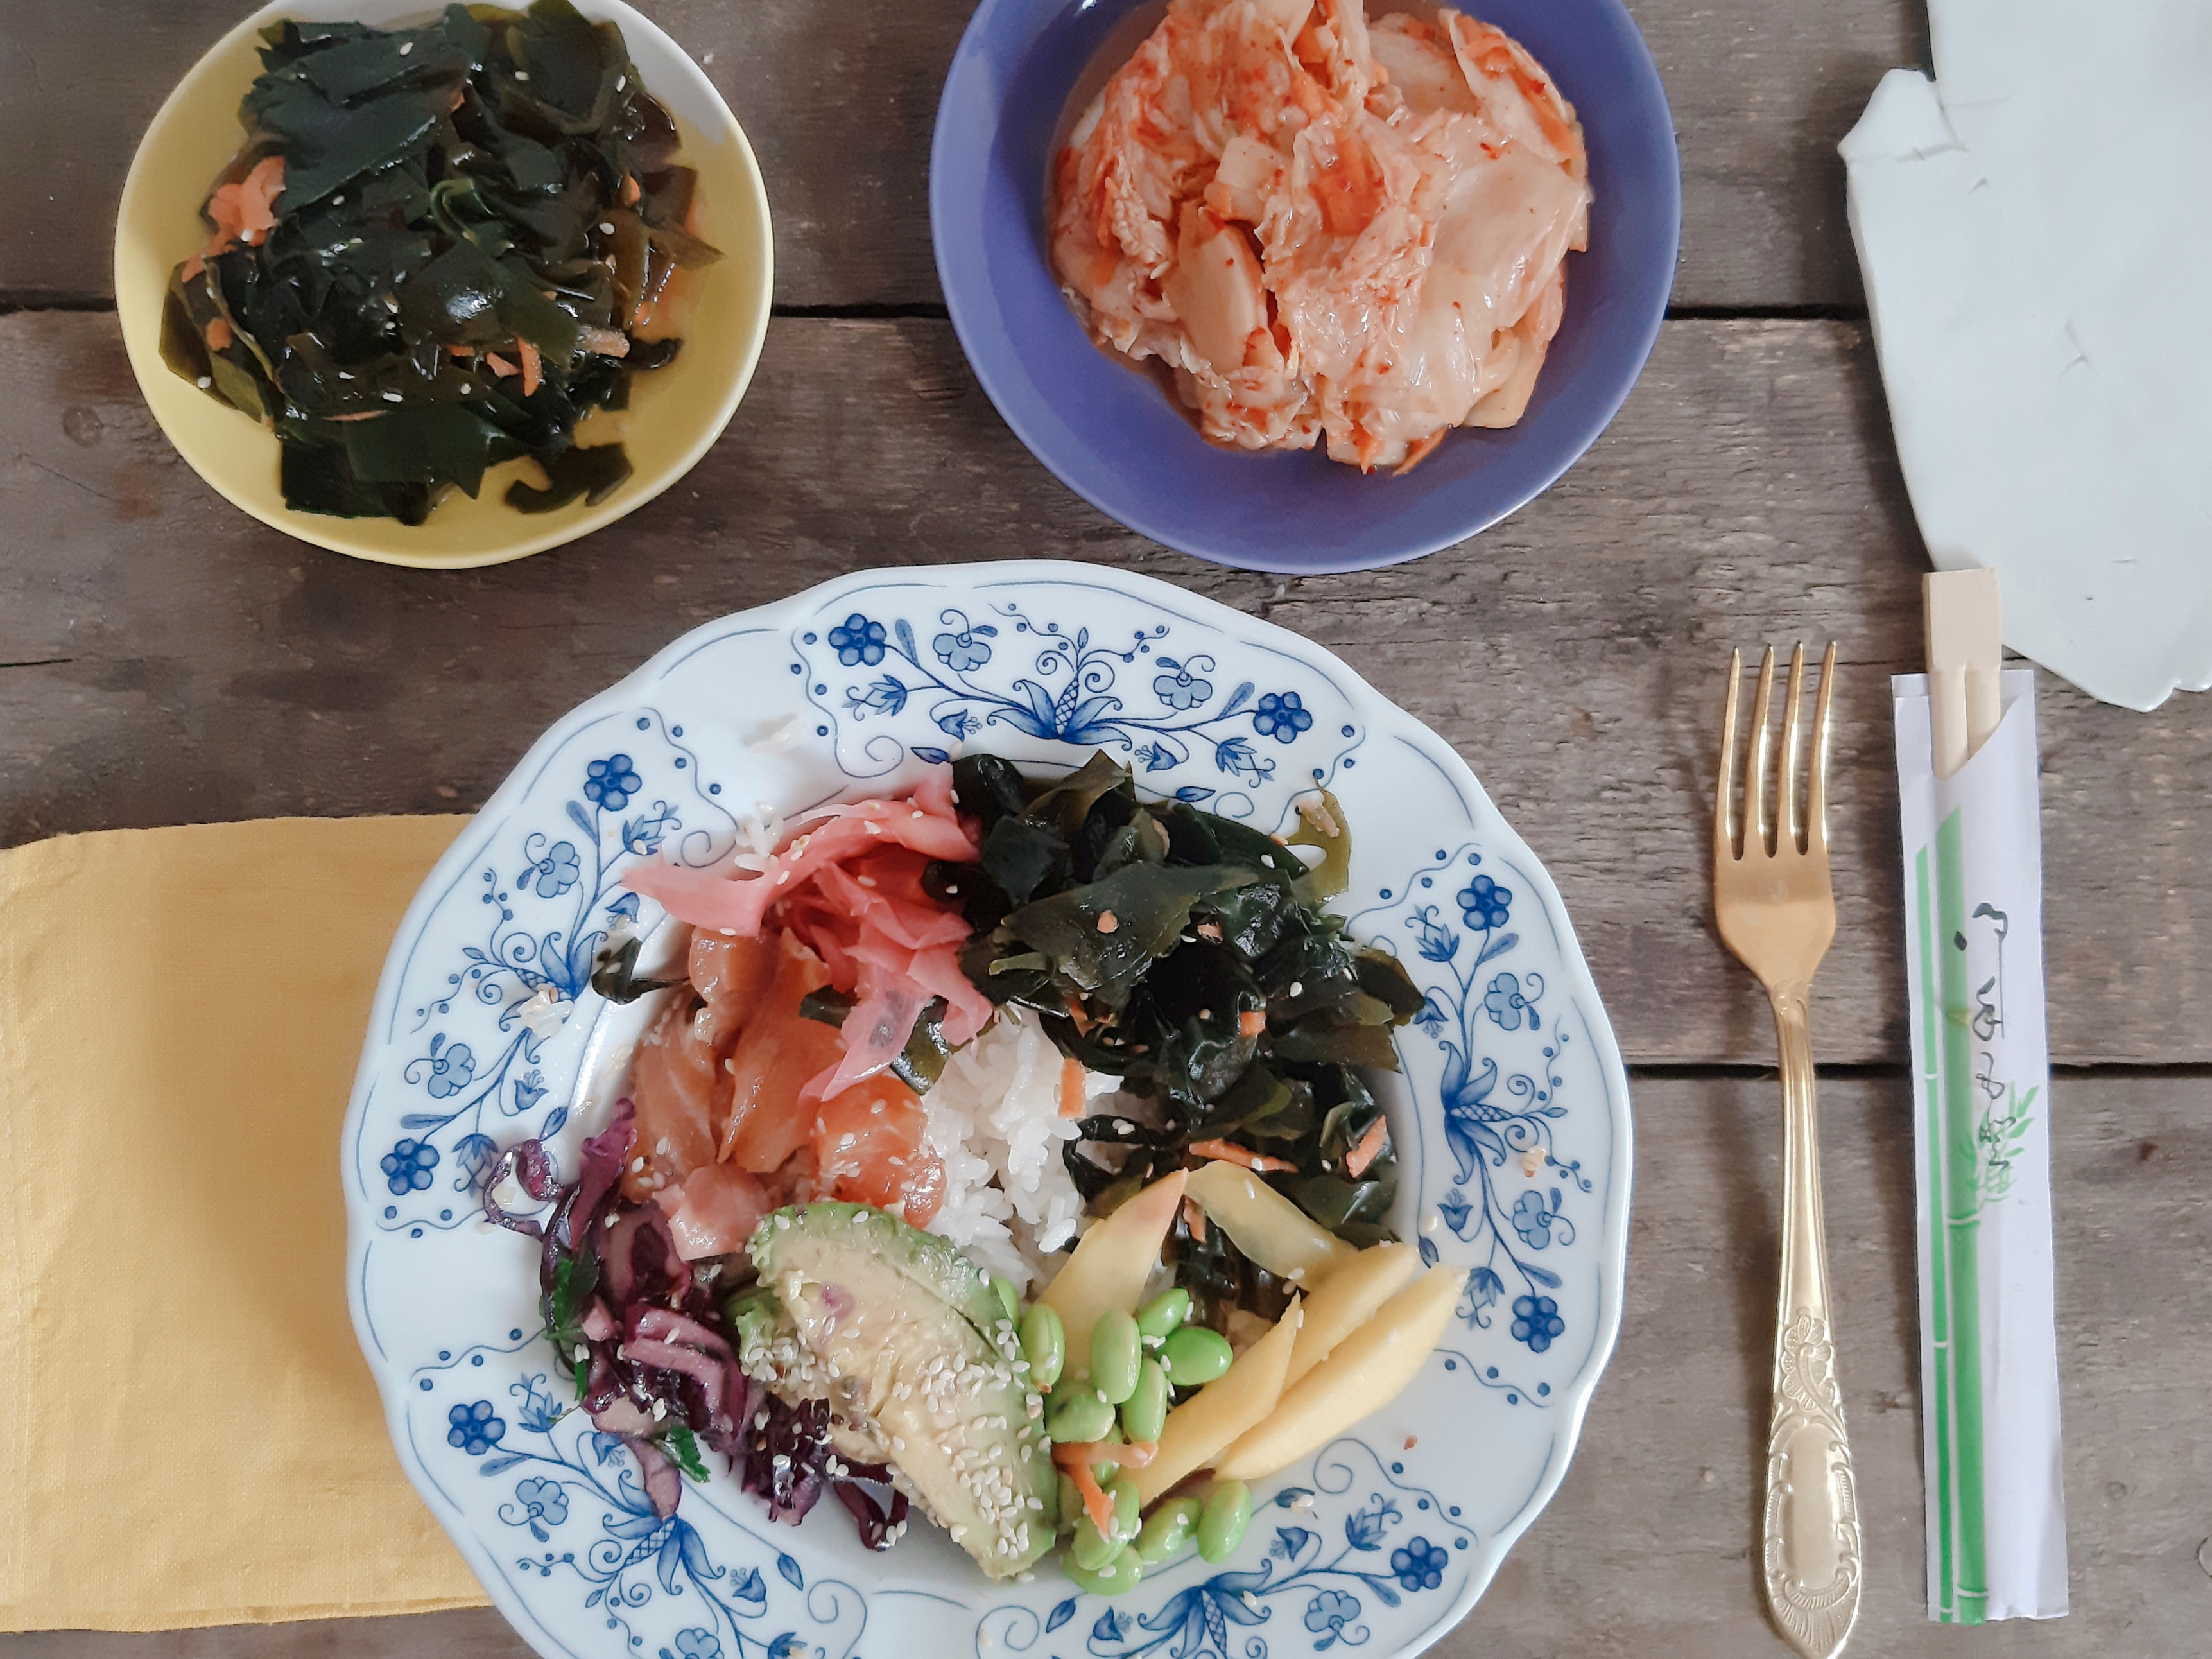 Niedzielny obiad  w stylu azjatyckim – miska z łososiem, kimchi i wakame